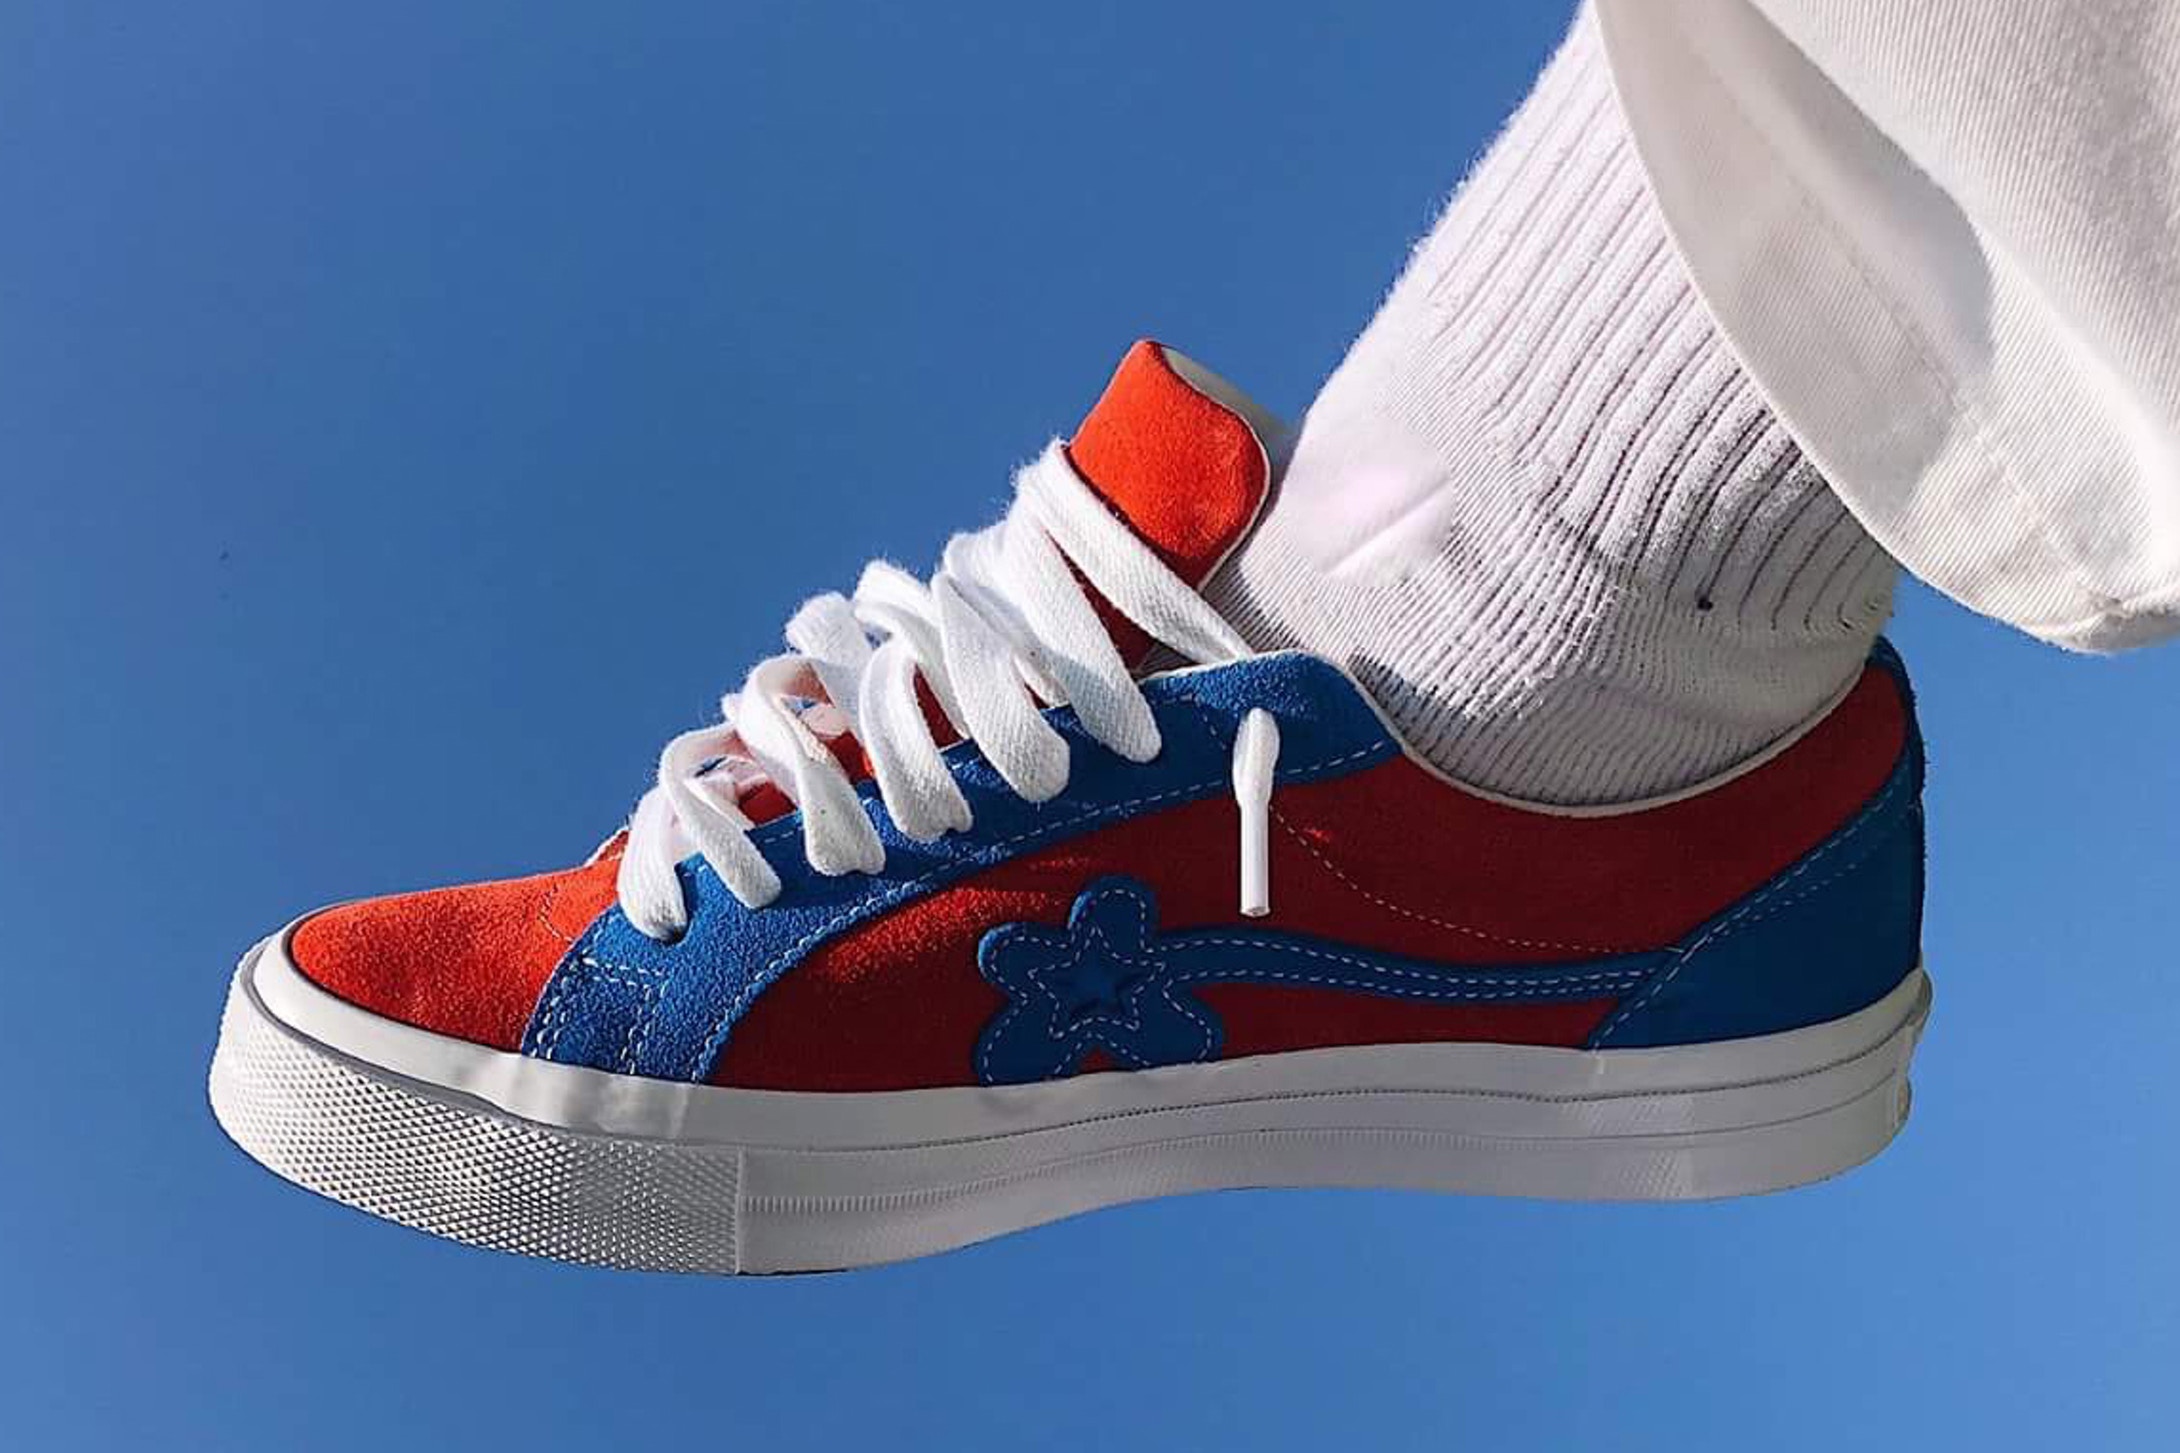 Sneaker Watch: GOLF le FLEUR* In Red & Blue Colourway